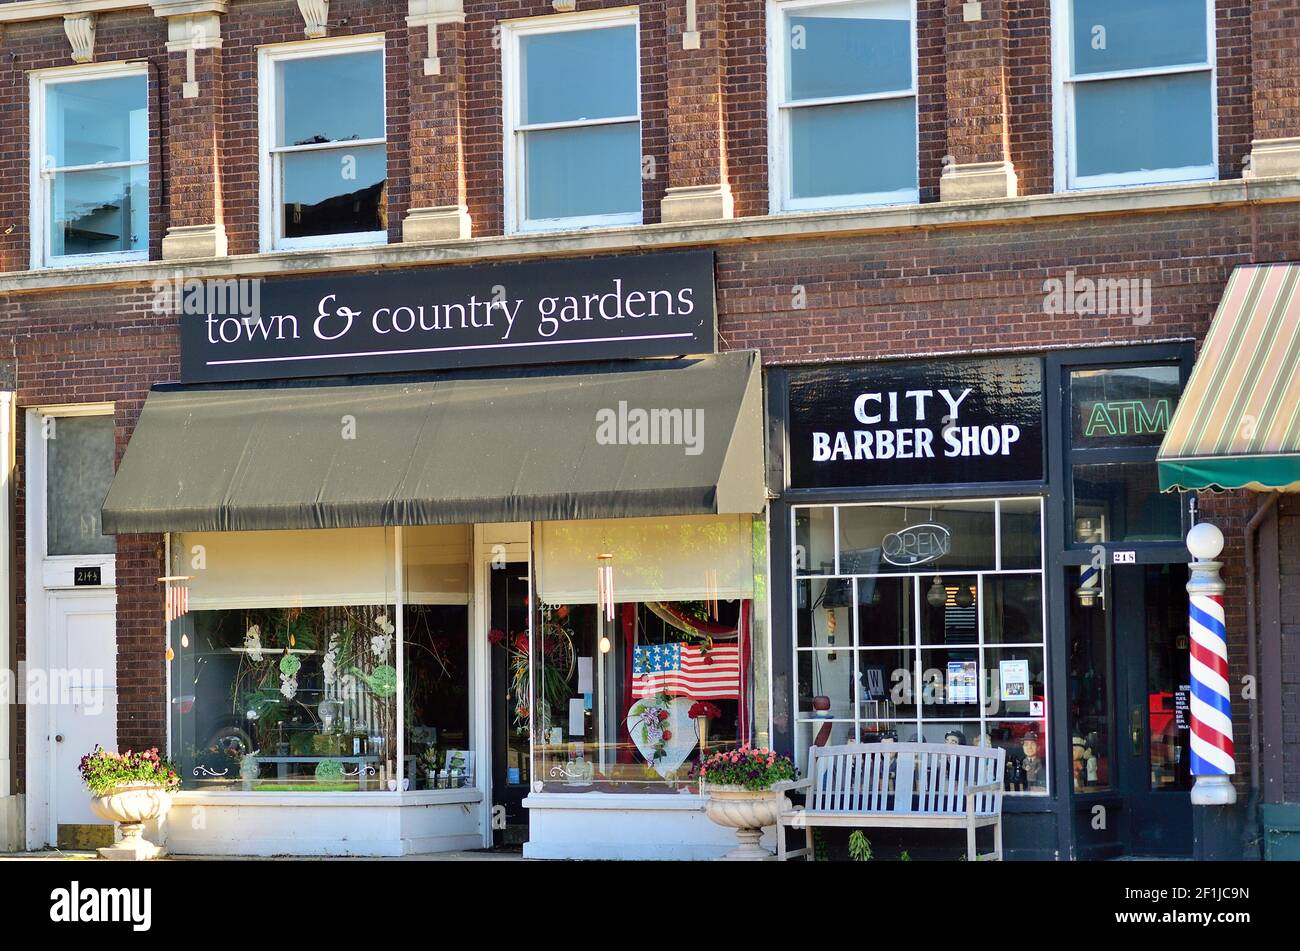 Genf, Illinois, USA. Eine ehrwürdige Reihe von Ladenfronten, darunter ein altmodisch erscheinender Friseurladen. Stockfoto